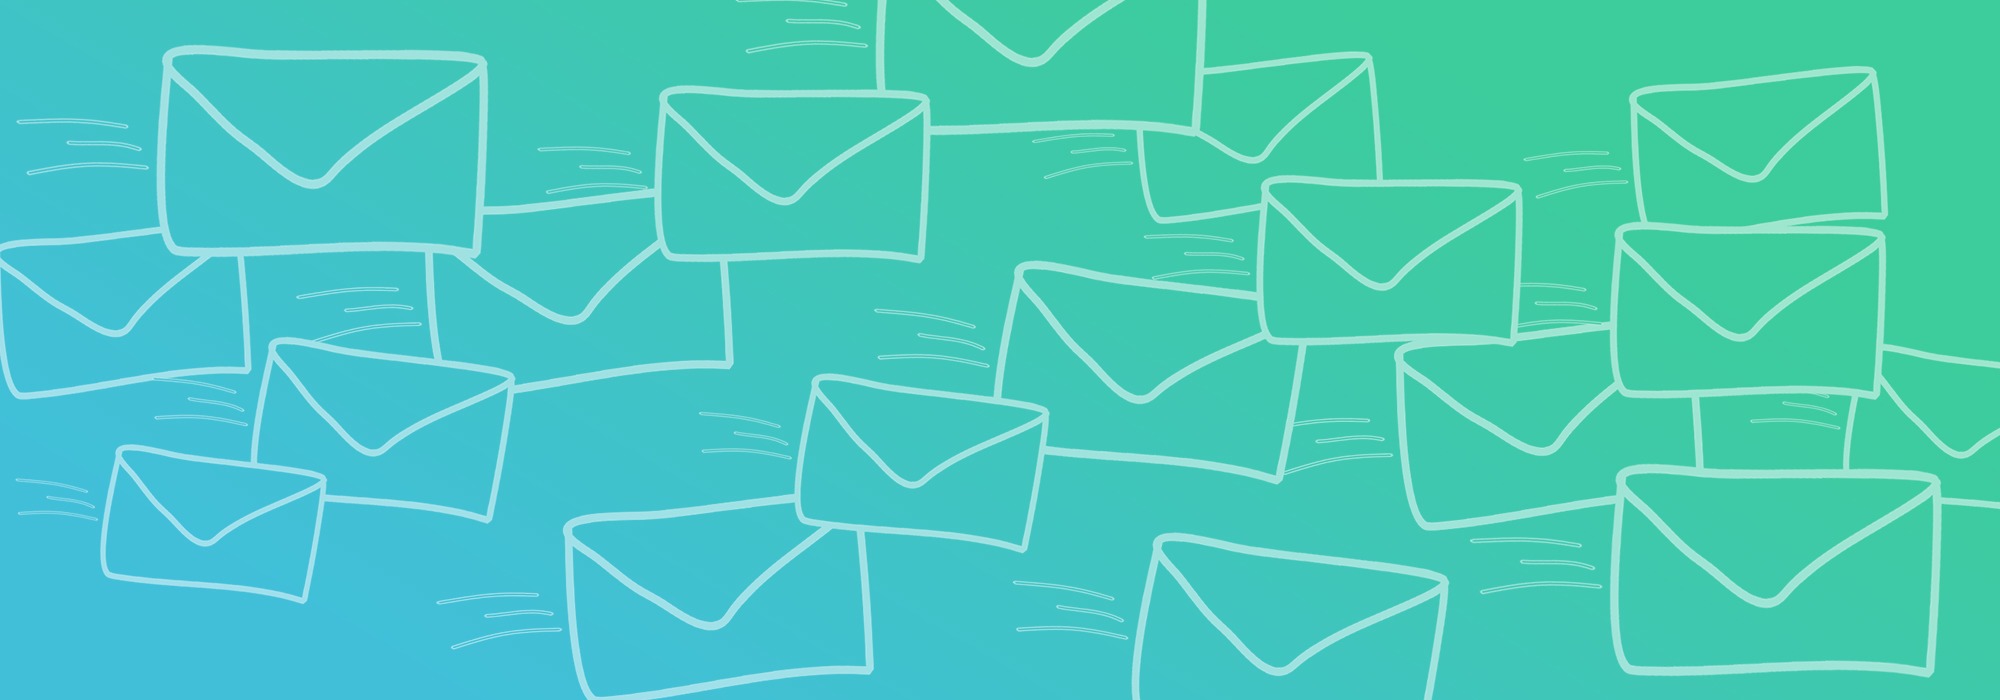 Email розсилка для інтернет-магазинів: як забезпечити повторні продажі